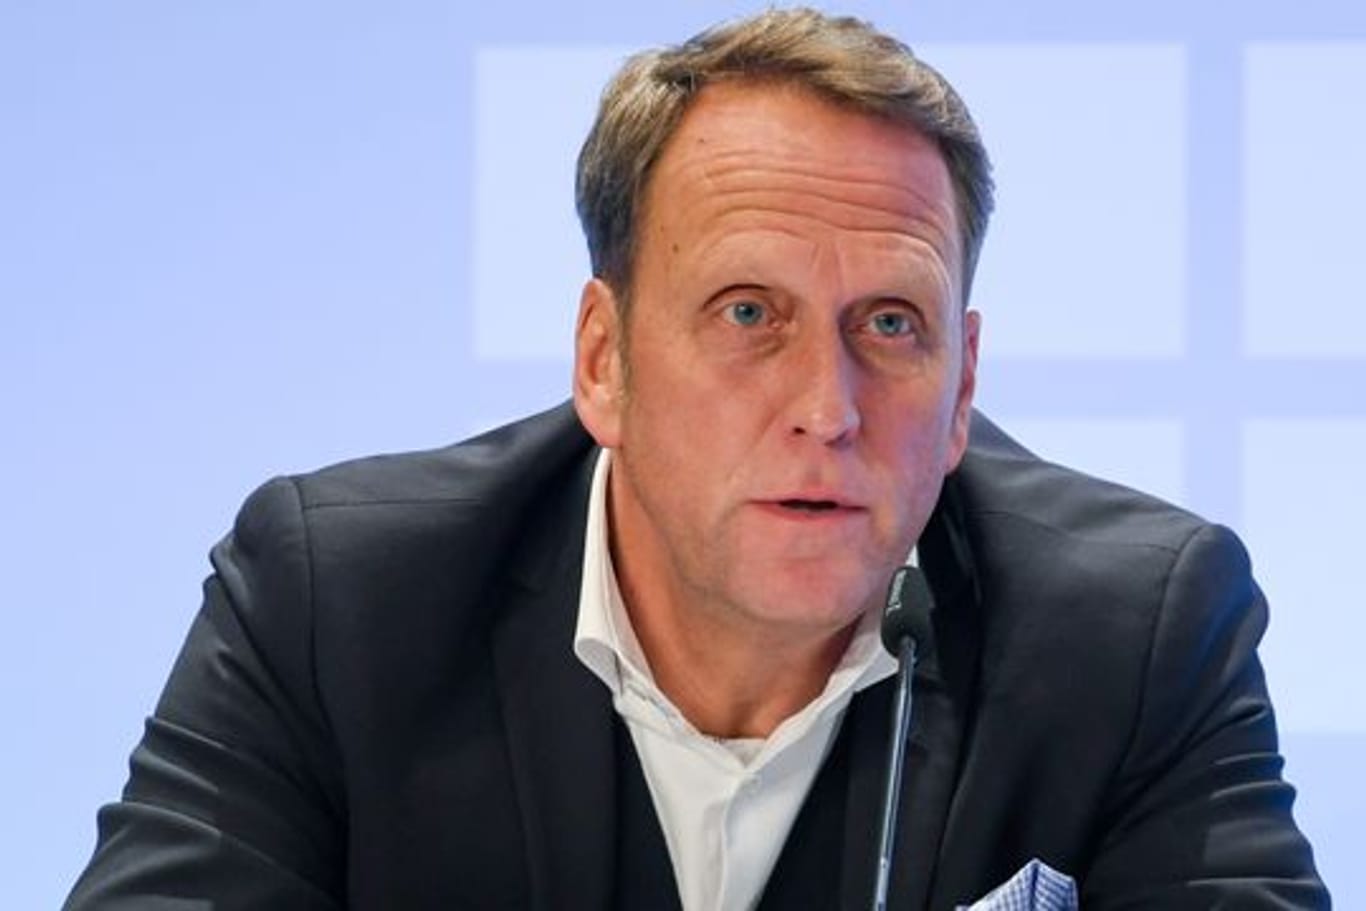 Mahnt in der neuen Transferphase zur Zurückhaltung: Steffen Schneekloth, stellvertretende Sprecher des DFL-Präsidiums und Mitglied im DFB-Vorstand.